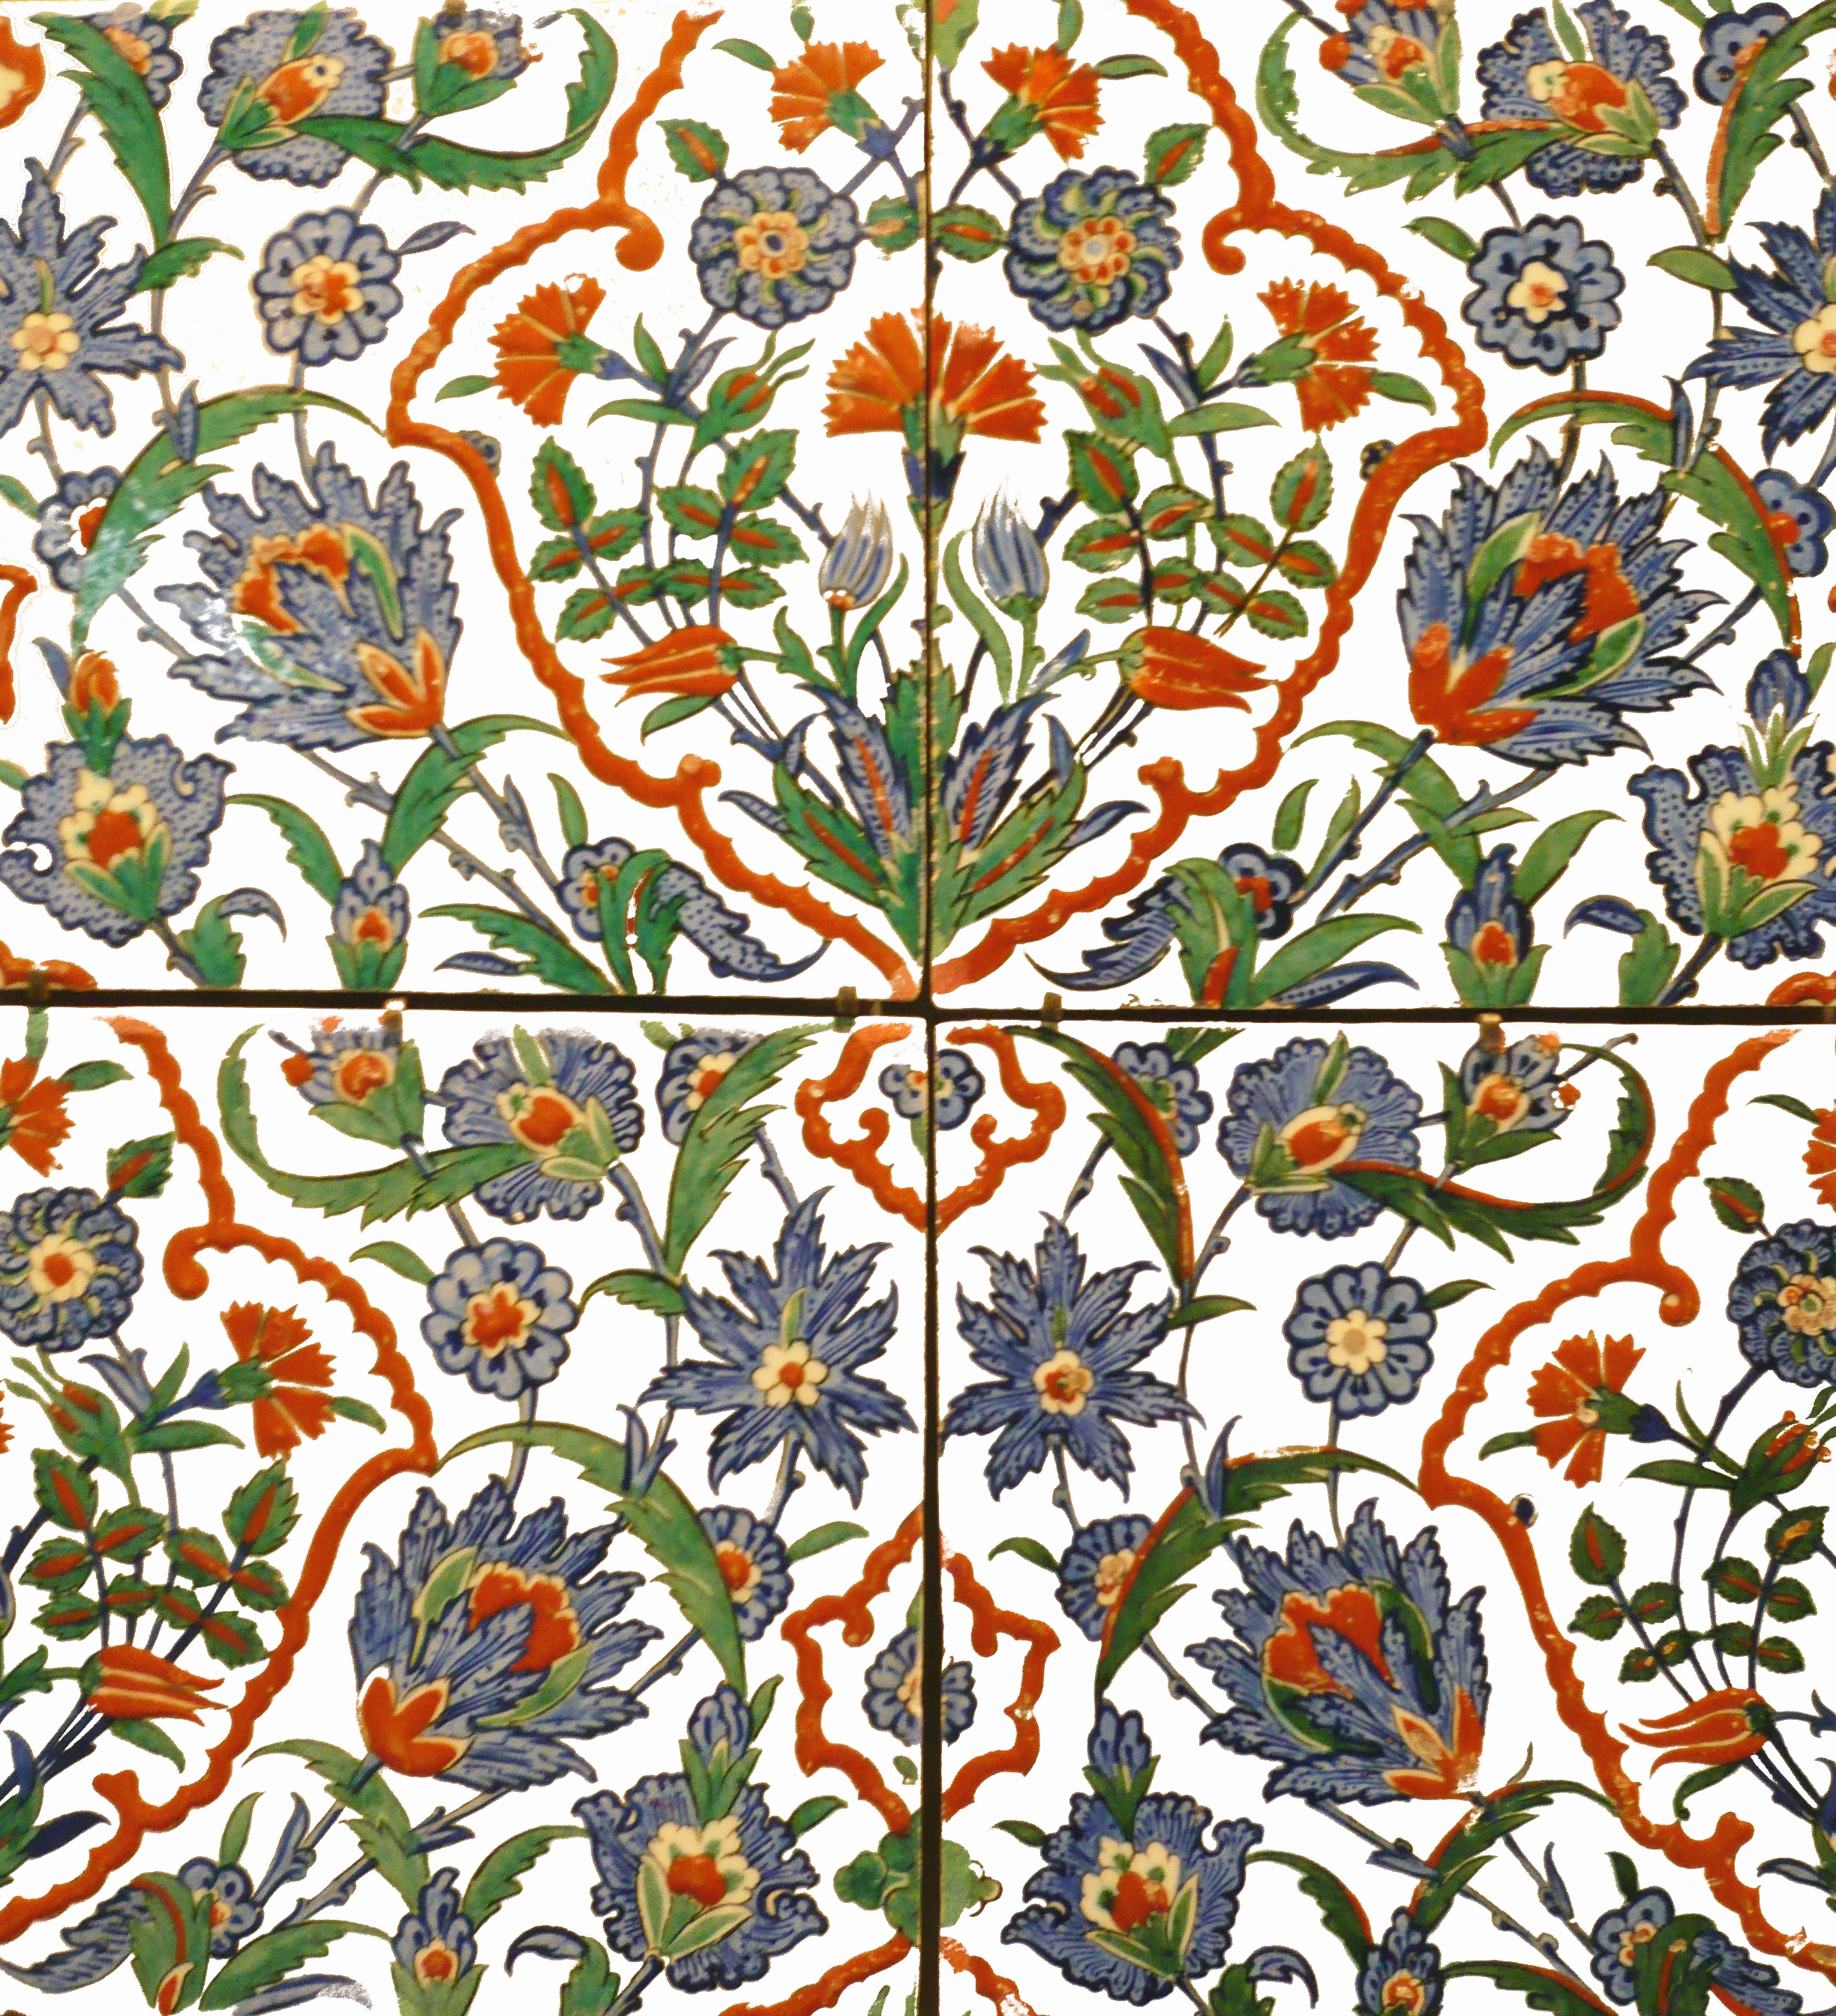 Ottoman ceramic tiles by Unknown Artist - 16th century - 50 x 50cm Sèvres, Cité de la céramique